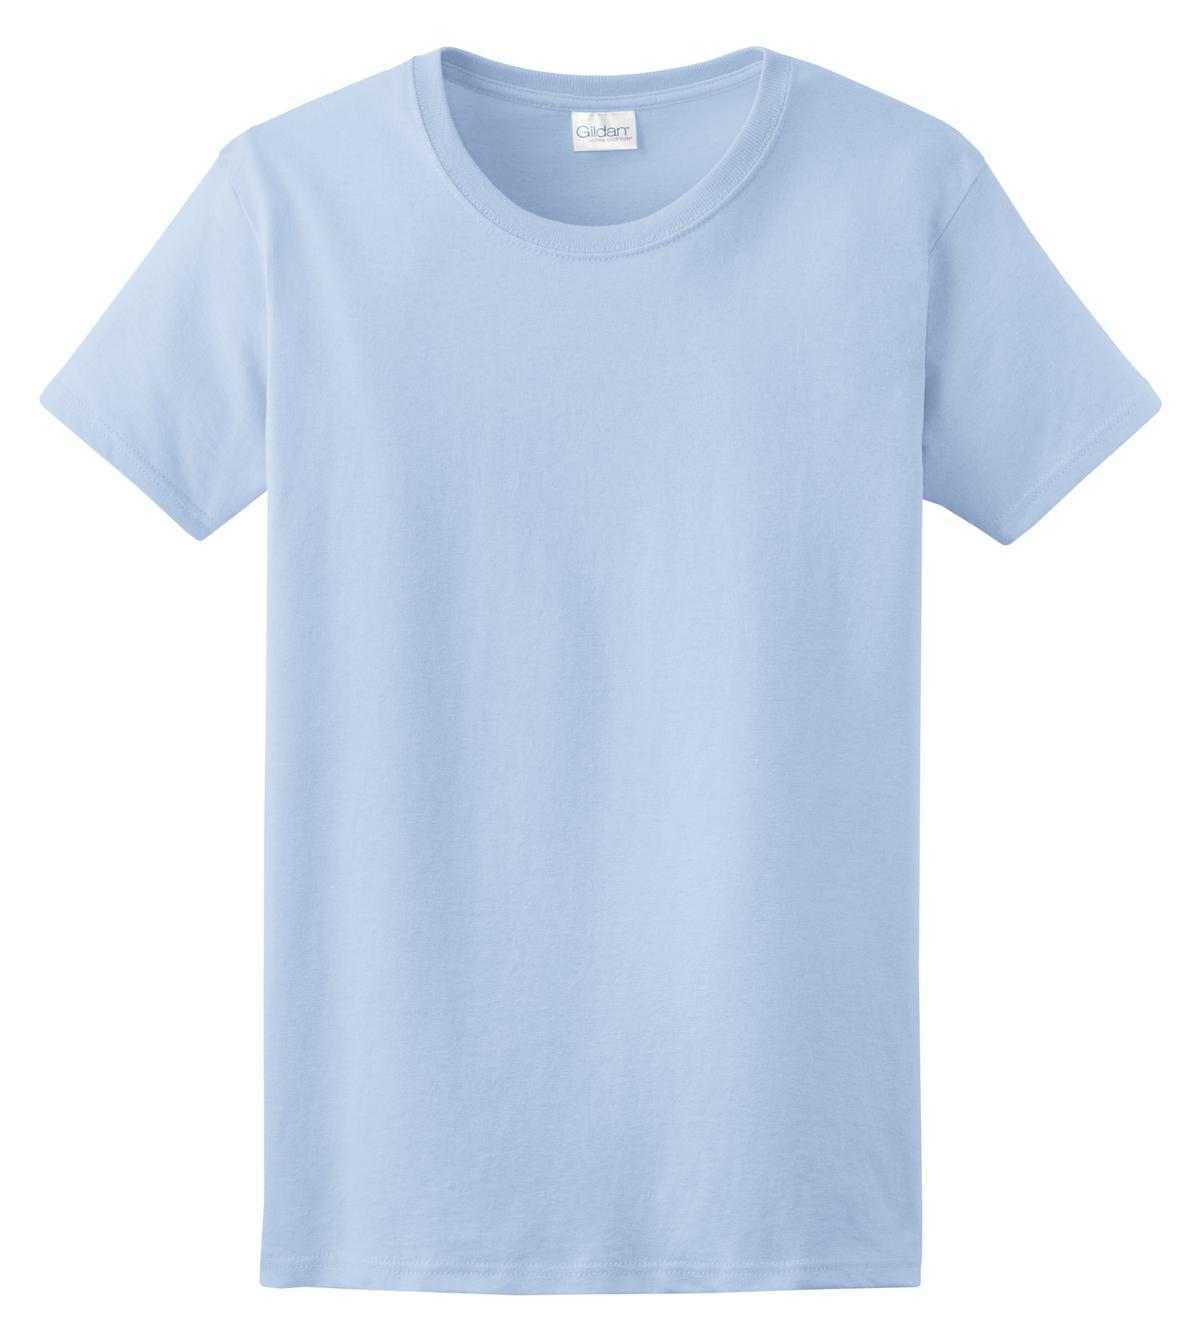 Gildan 2000L Ladies Ultra Cotton 100% Cotton T-Shirt - Light Blue - HIT a Double